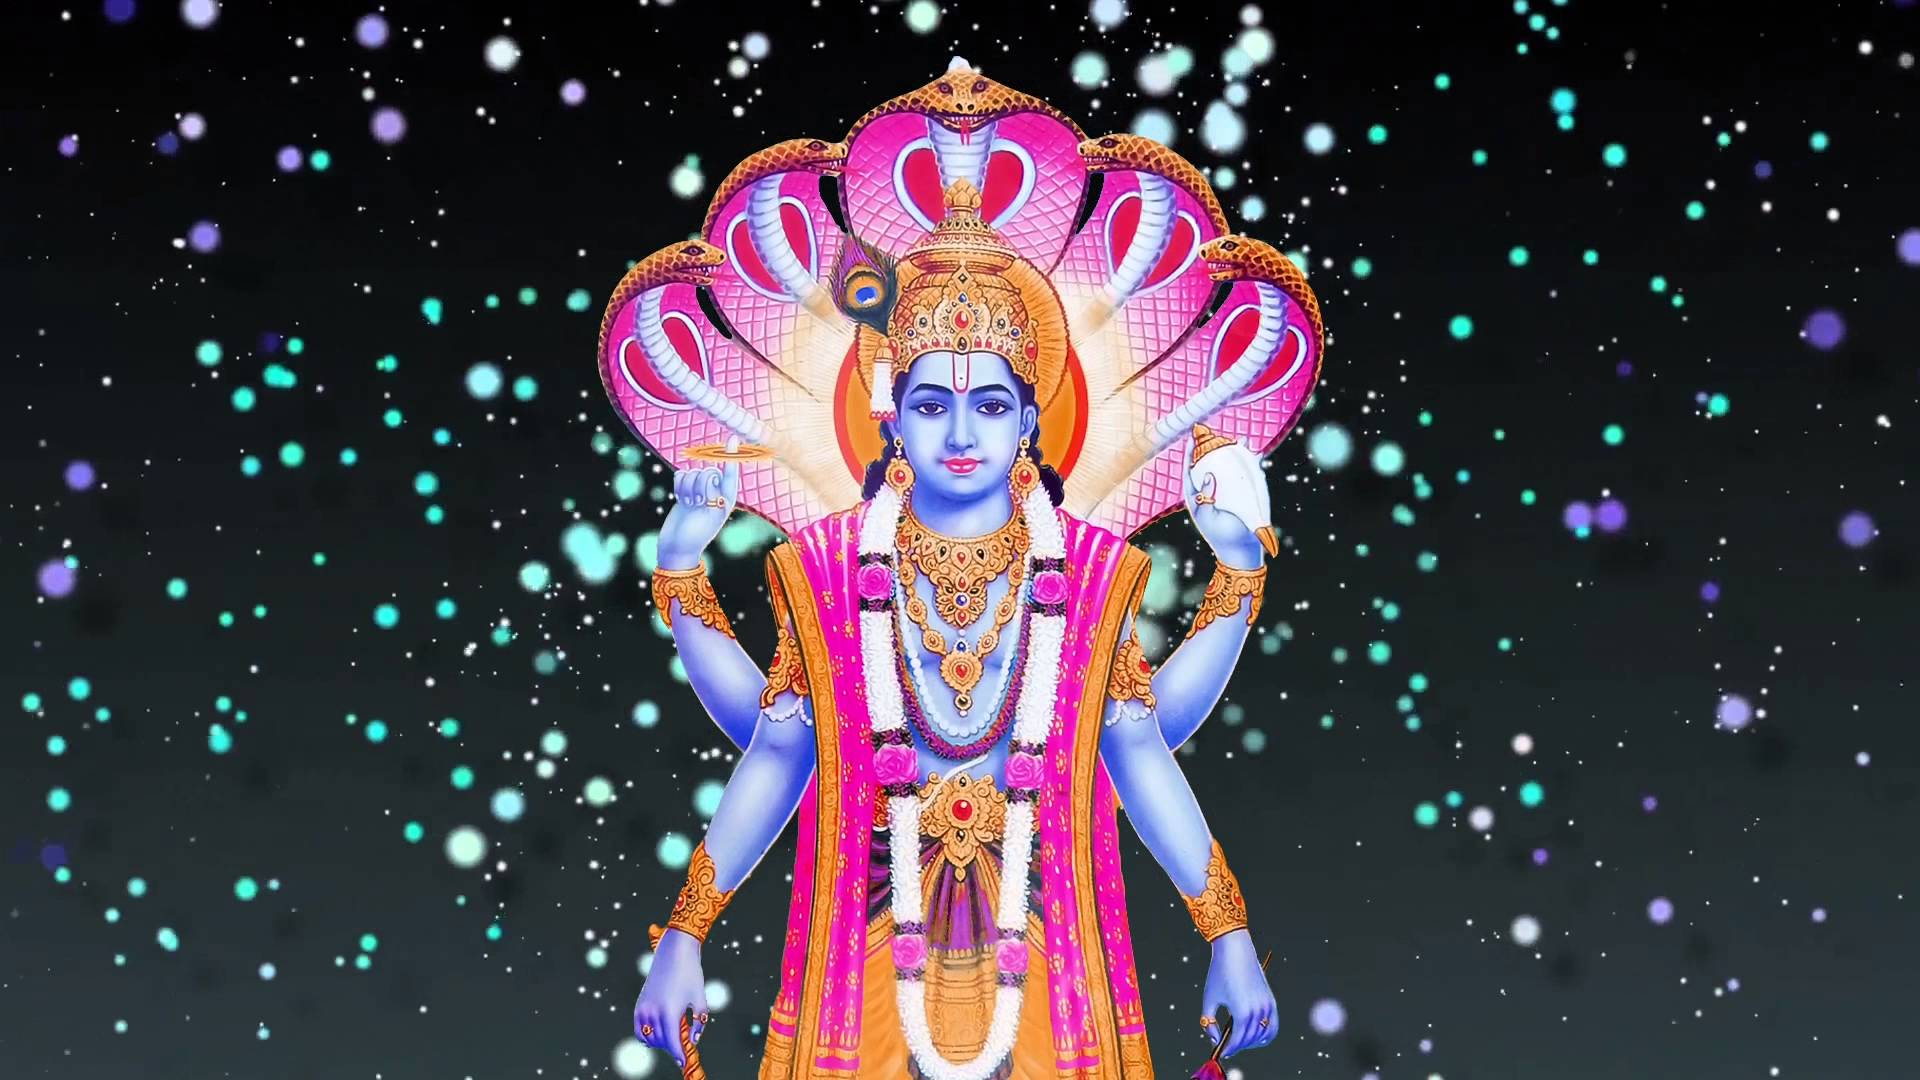 Lord Vishnu Matsya Avatar Image